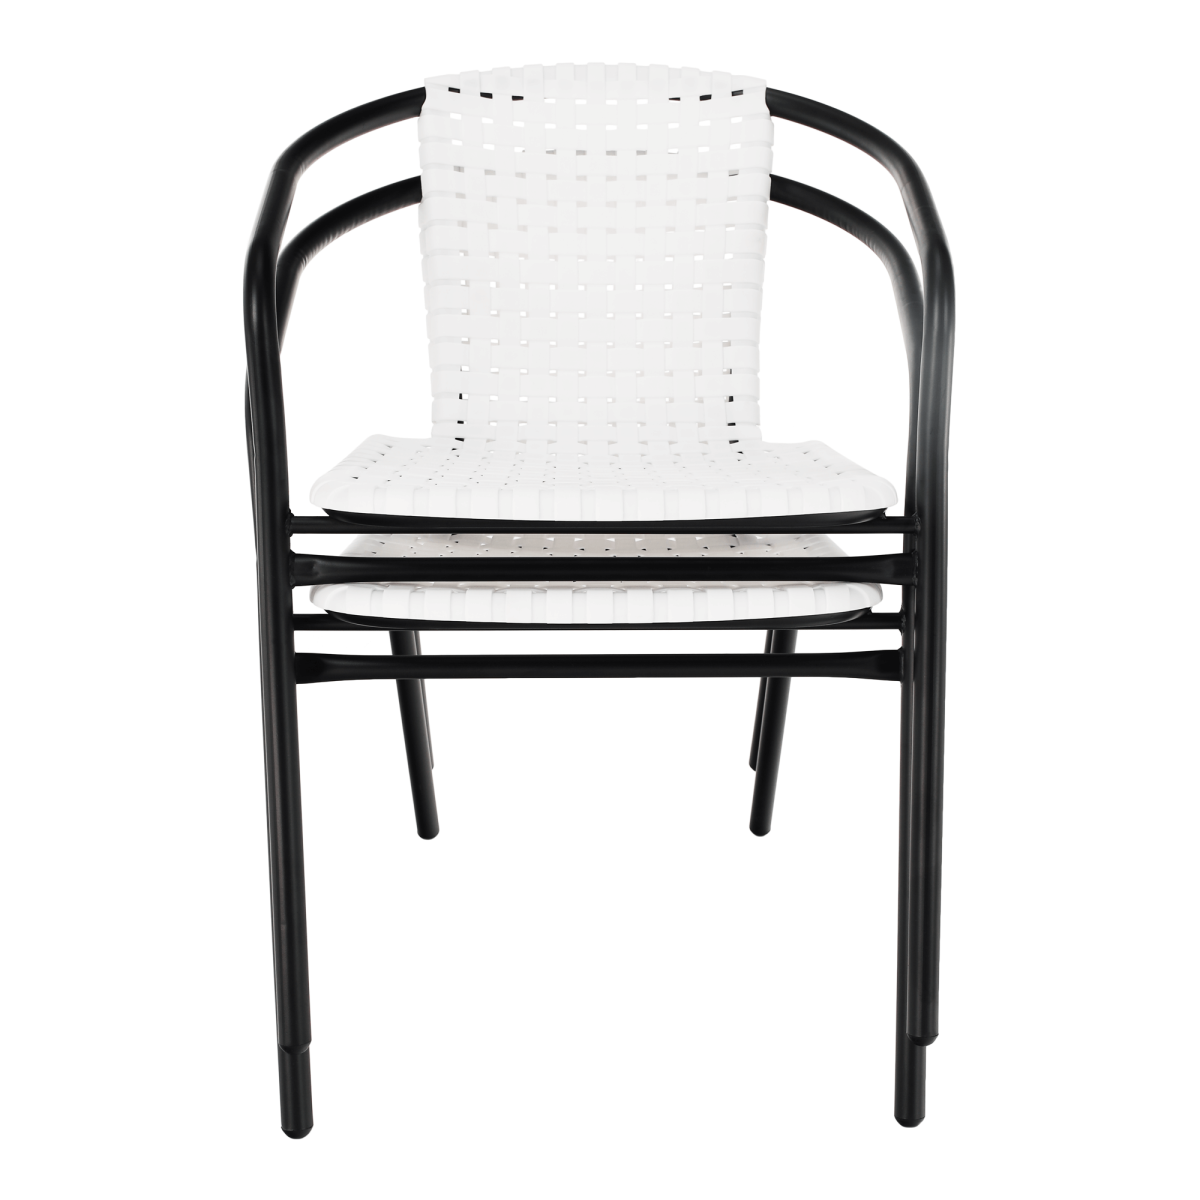 Kerti szék, fehér/fekete, BERGOLA